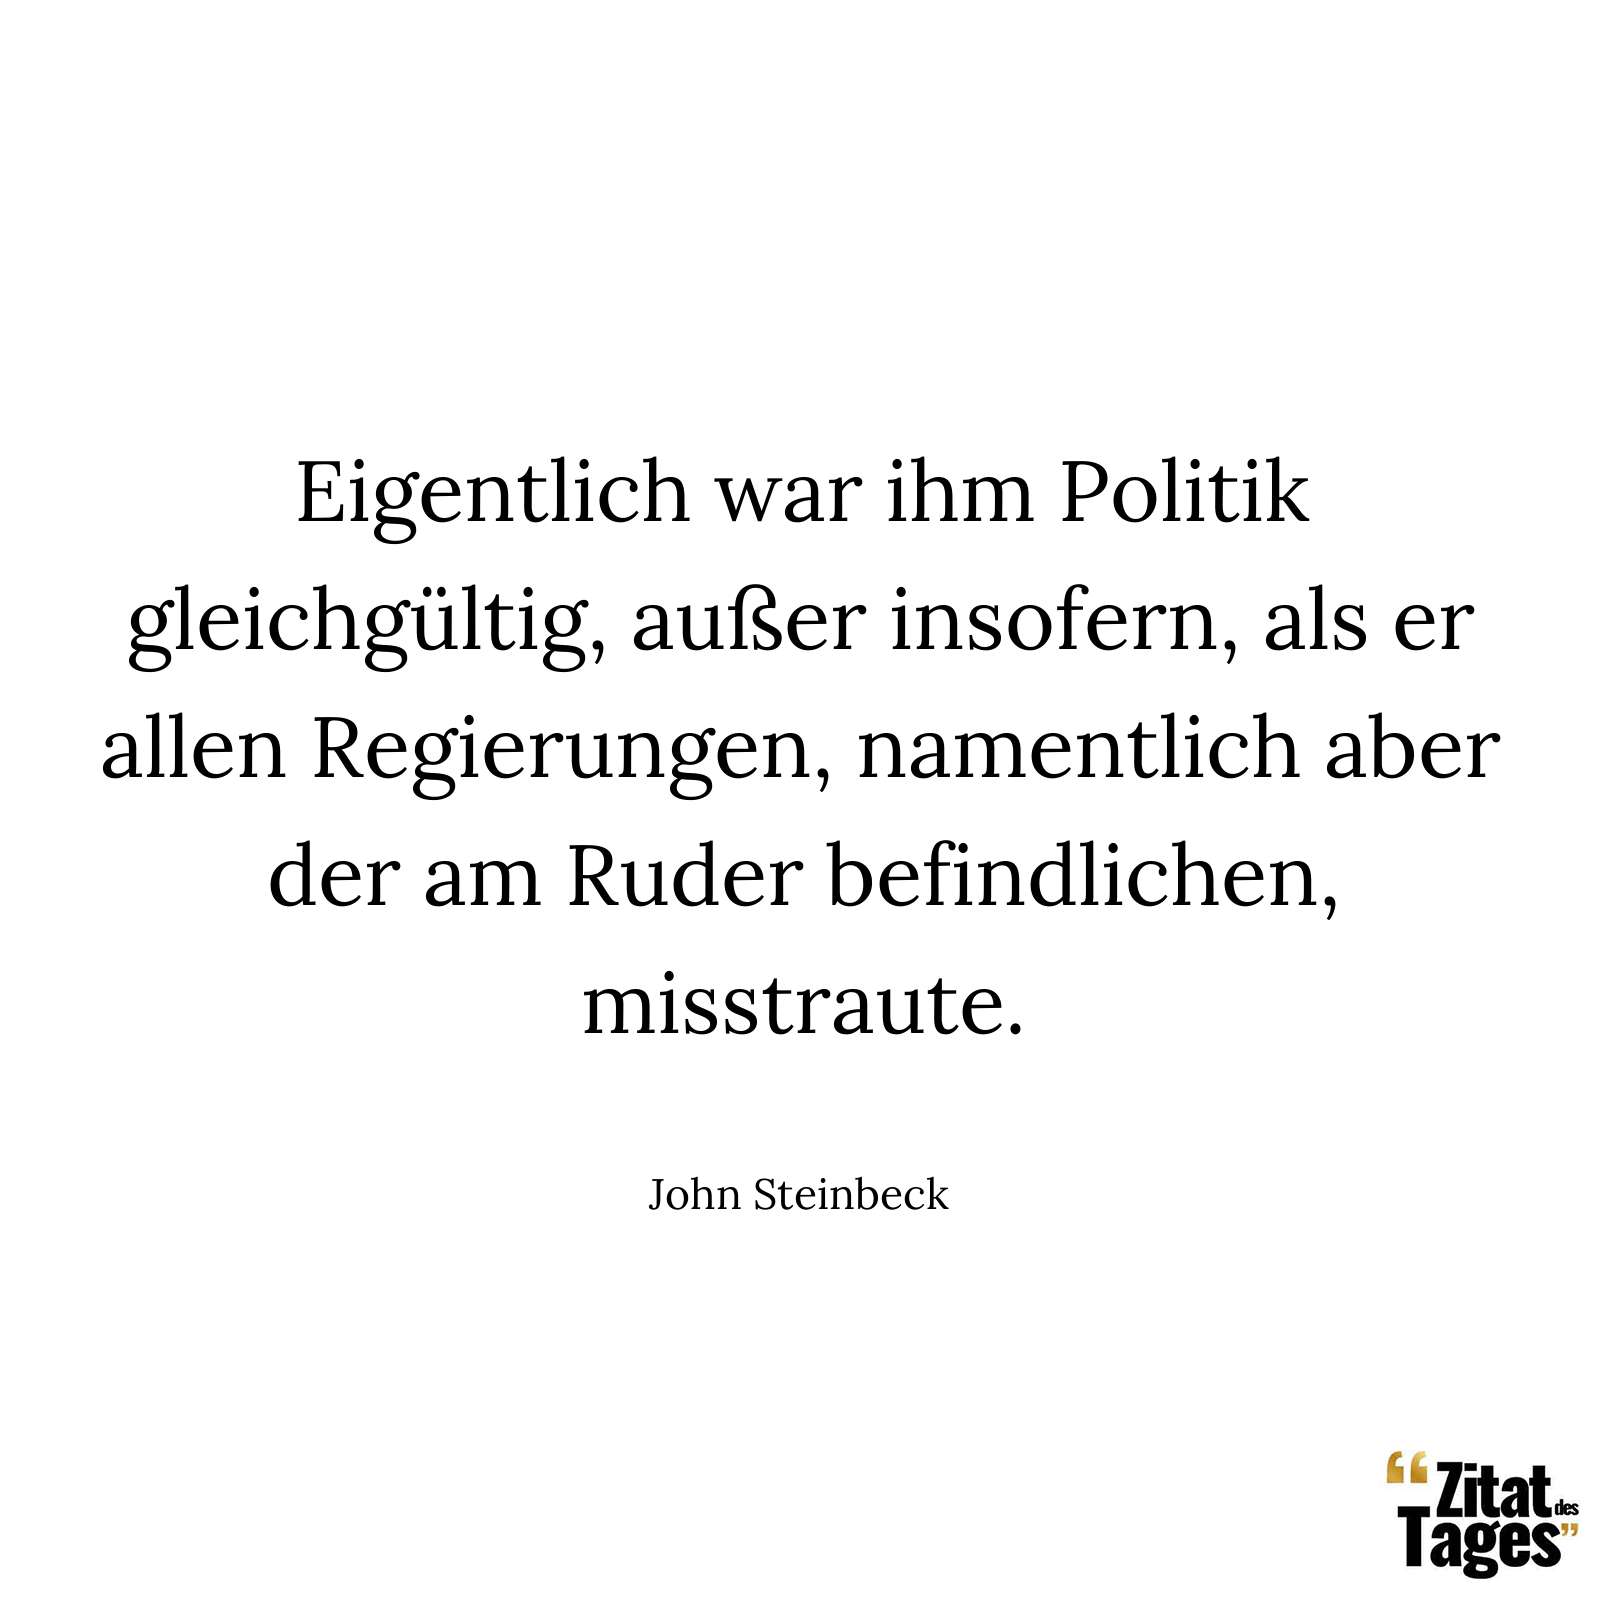 Eigentlich war ihm Politik gleichgültig, außer insofern, als er allen Regierungen, namentlich aber der am Ruder befindlichen, misstraute. - John Steinbeck